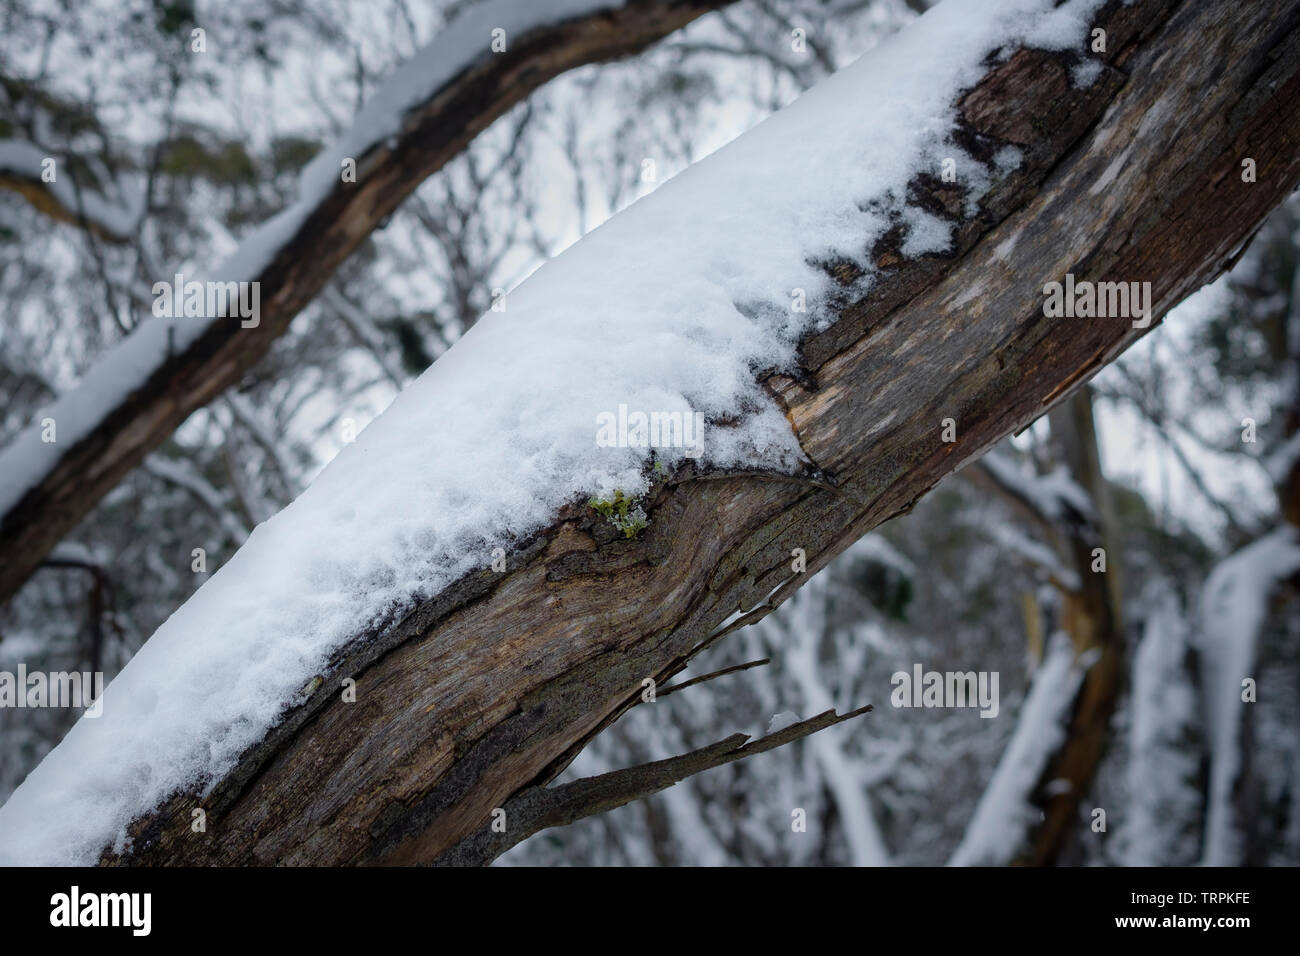 La neige reposant sur l'écorce d'un gommier. Thredbo, EN IN Banque D'Images